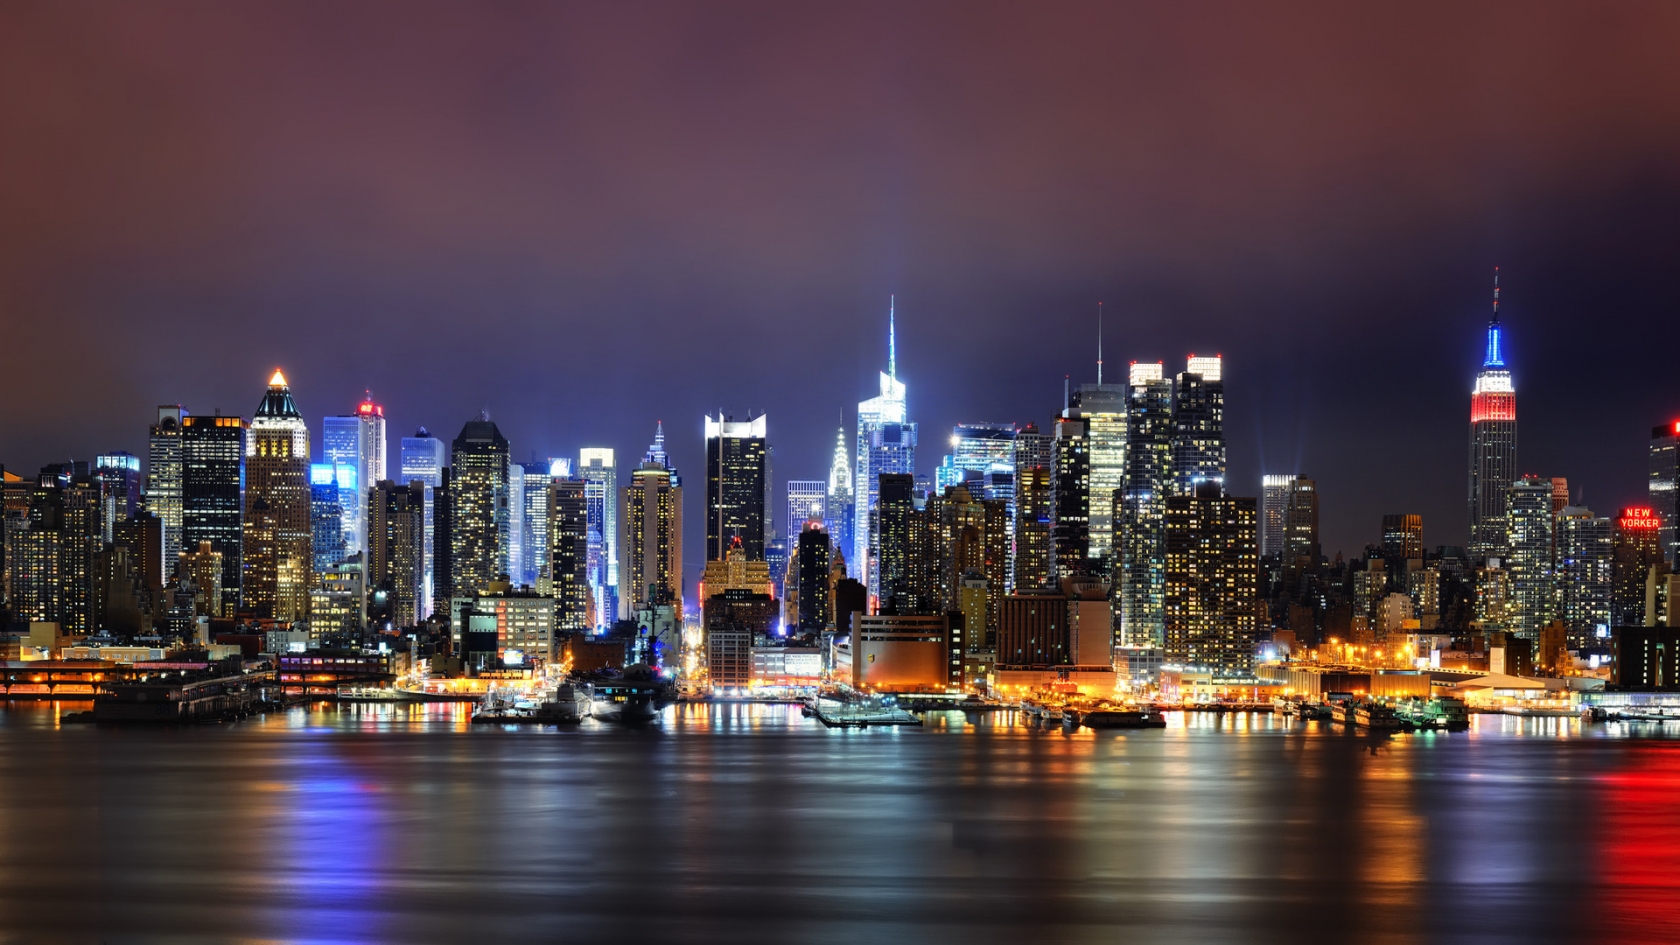 New York Lighting for 1680 x 945 HDTV resolution